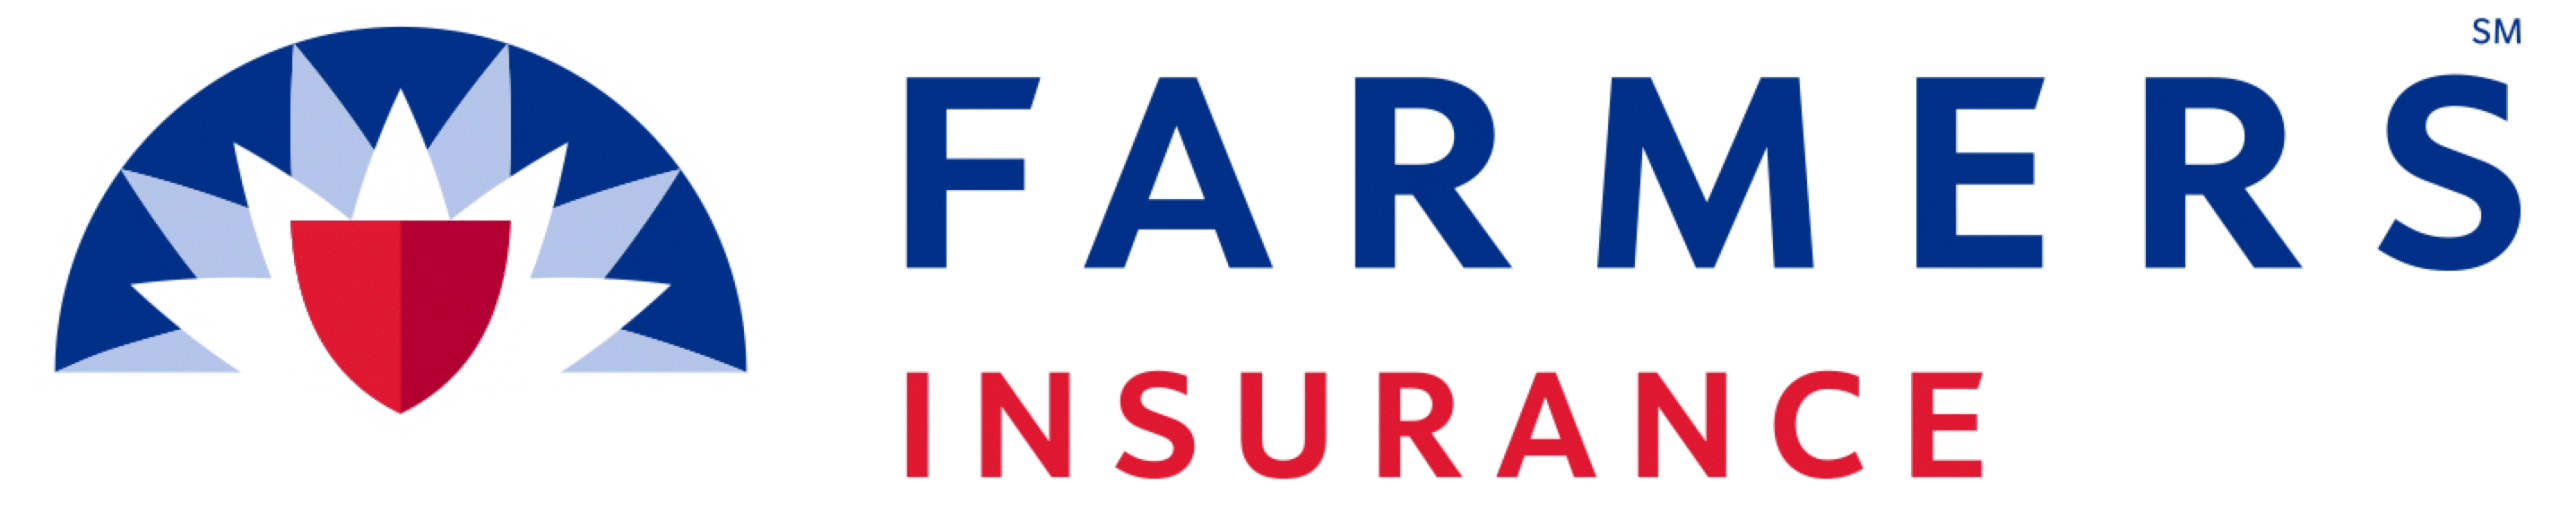 Logotipo de seguros de agricultores